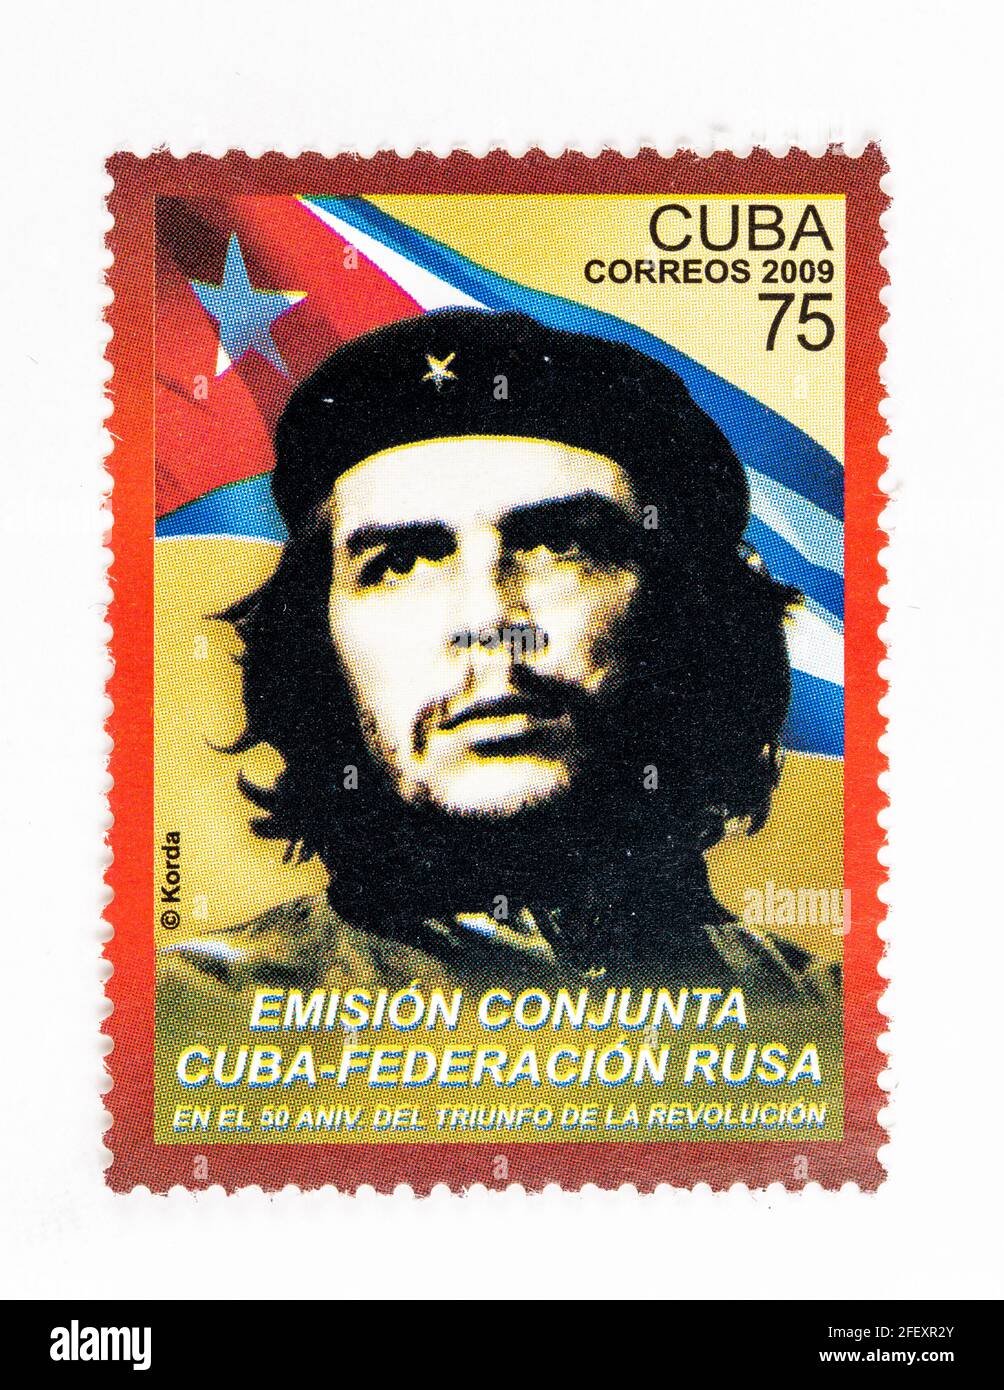 Vintage 'Cuba Correos' Marke mit dem Che Guevara Bild. Jahr 2009. Sonderemission der Russischen Föderation und Kubas zum 50. Jahrestag des Th Stockfoto